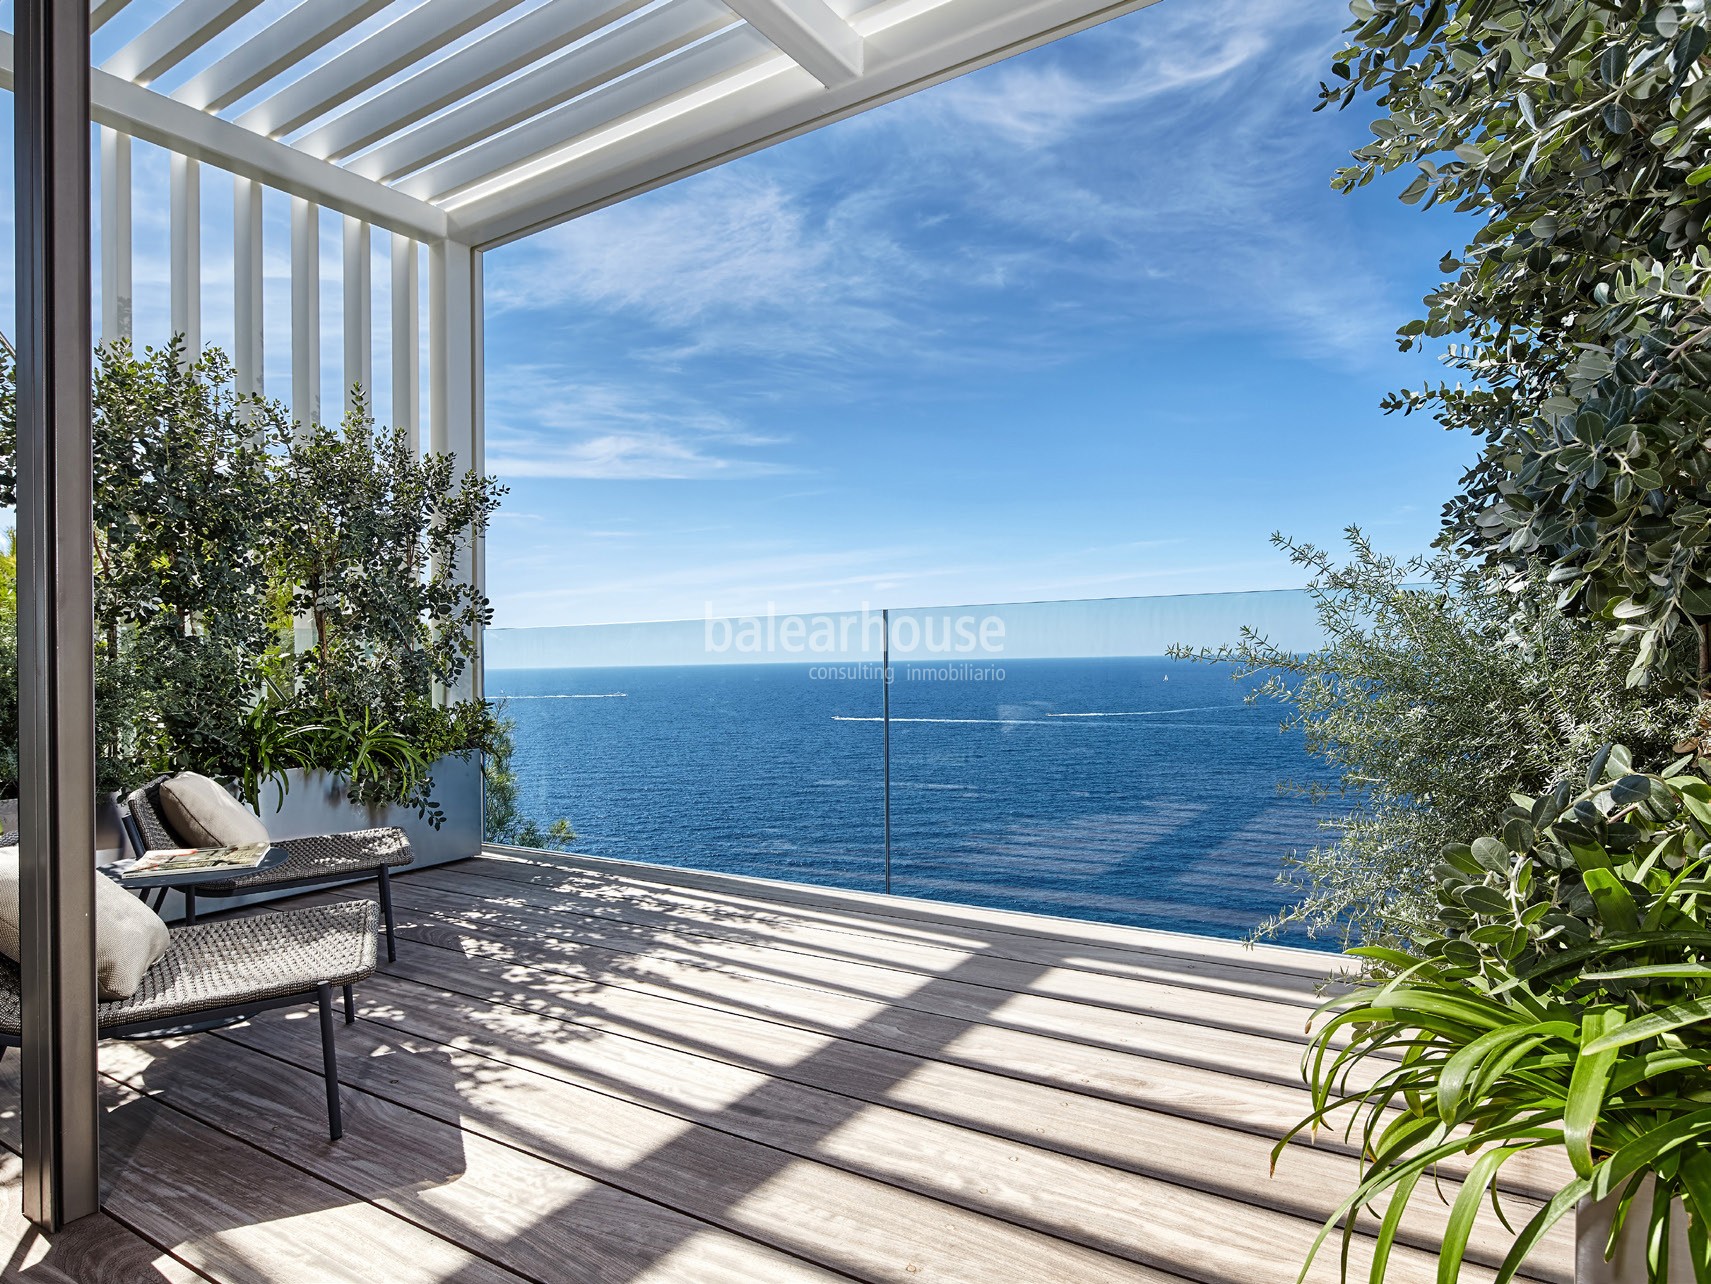 EXCLUSIVA. Espectacular villa frente al mar en Port Adriano; lujo y diseño en su máximo nivel.